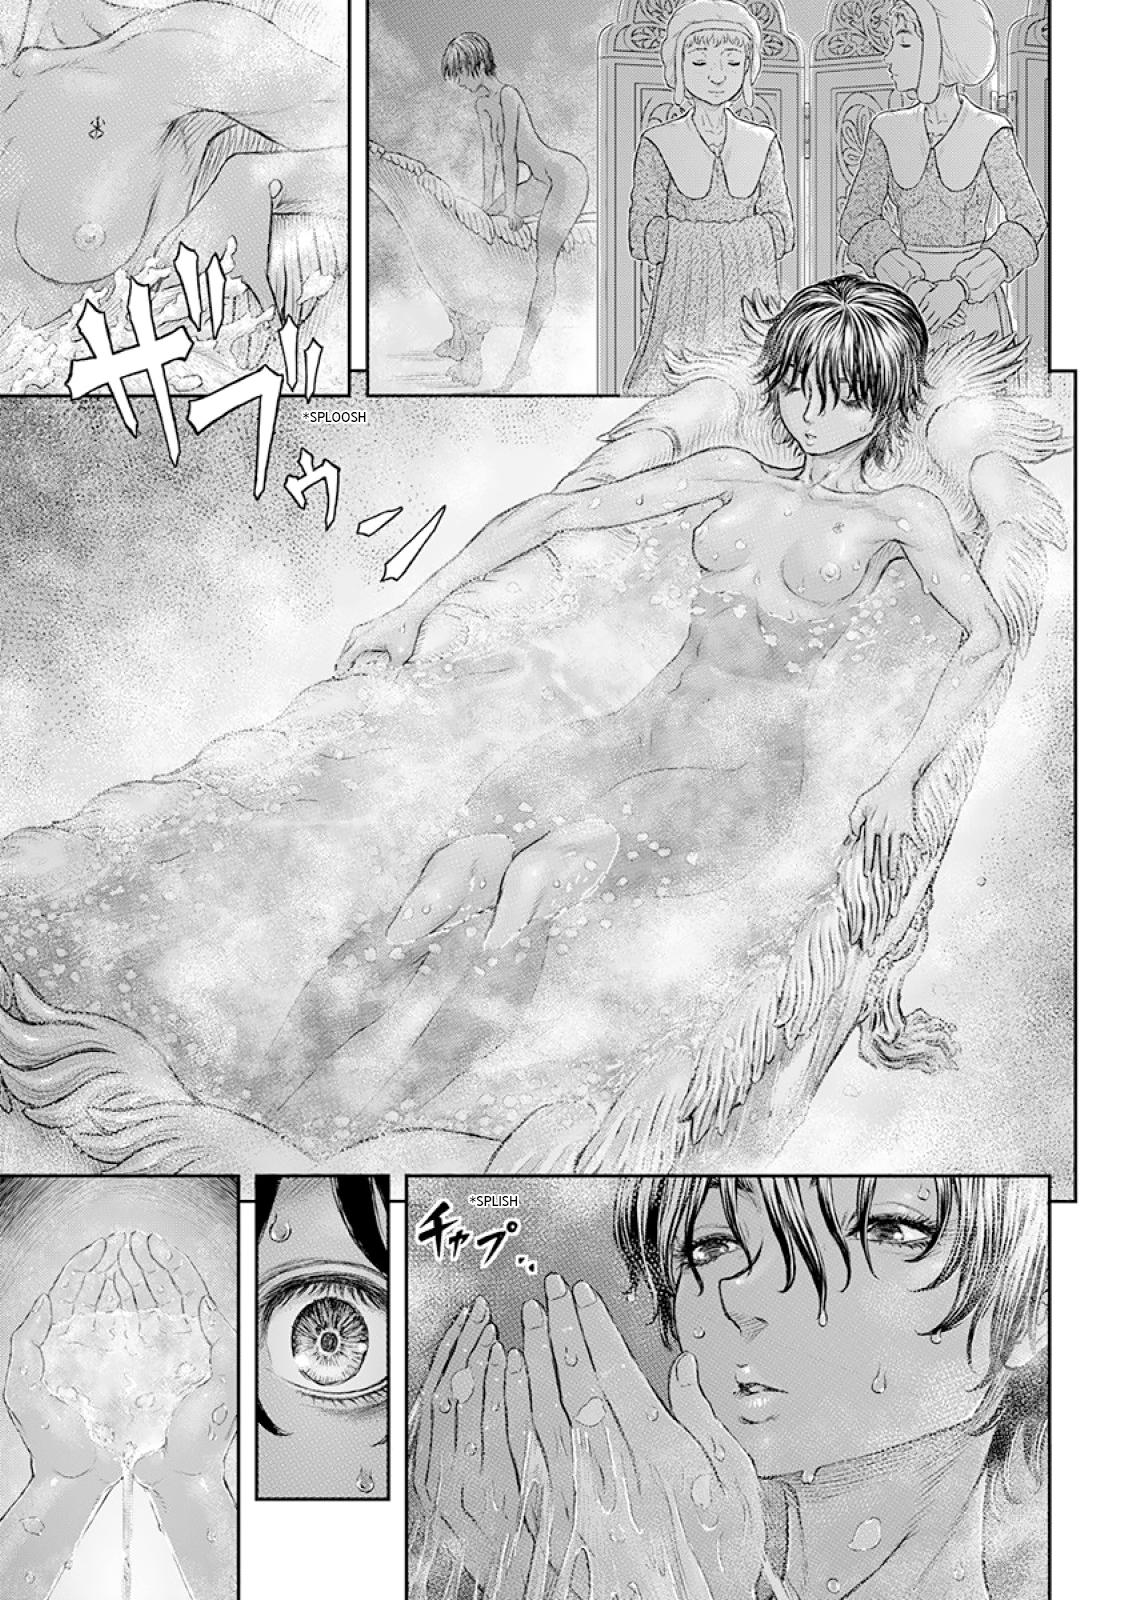 Berserk Manga Chapter 372 image 12